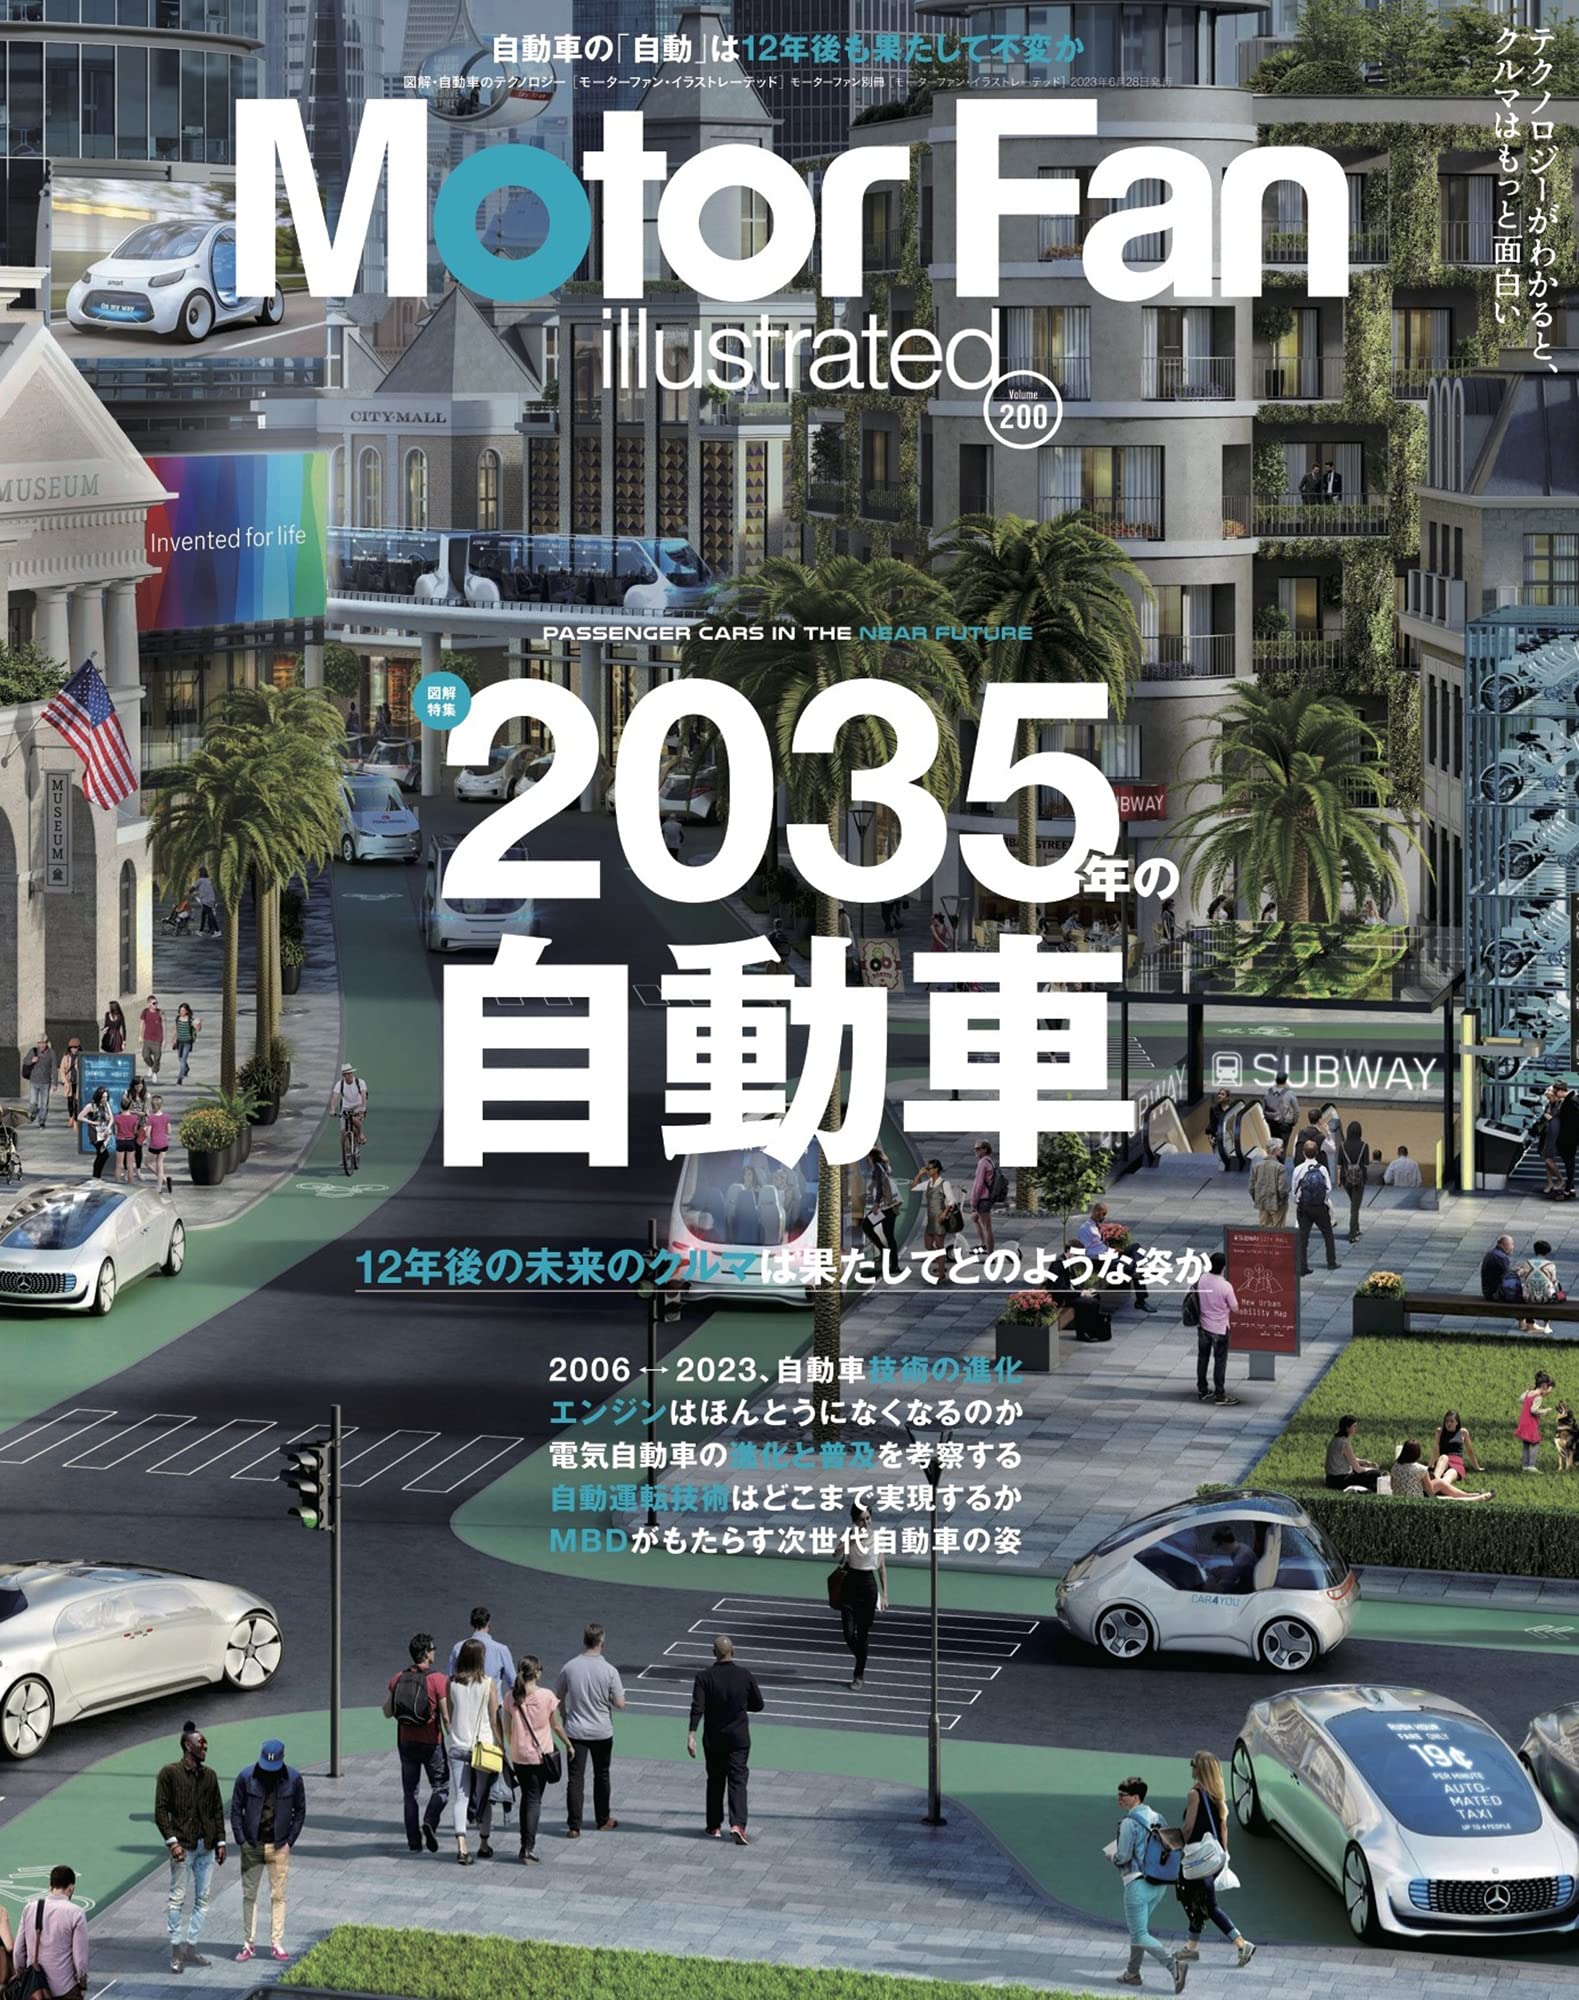 MOTOR FAN illustrated - モ-タ-ファンイラストレ-テッド - Vol.200 モ-タ-ファン別冊